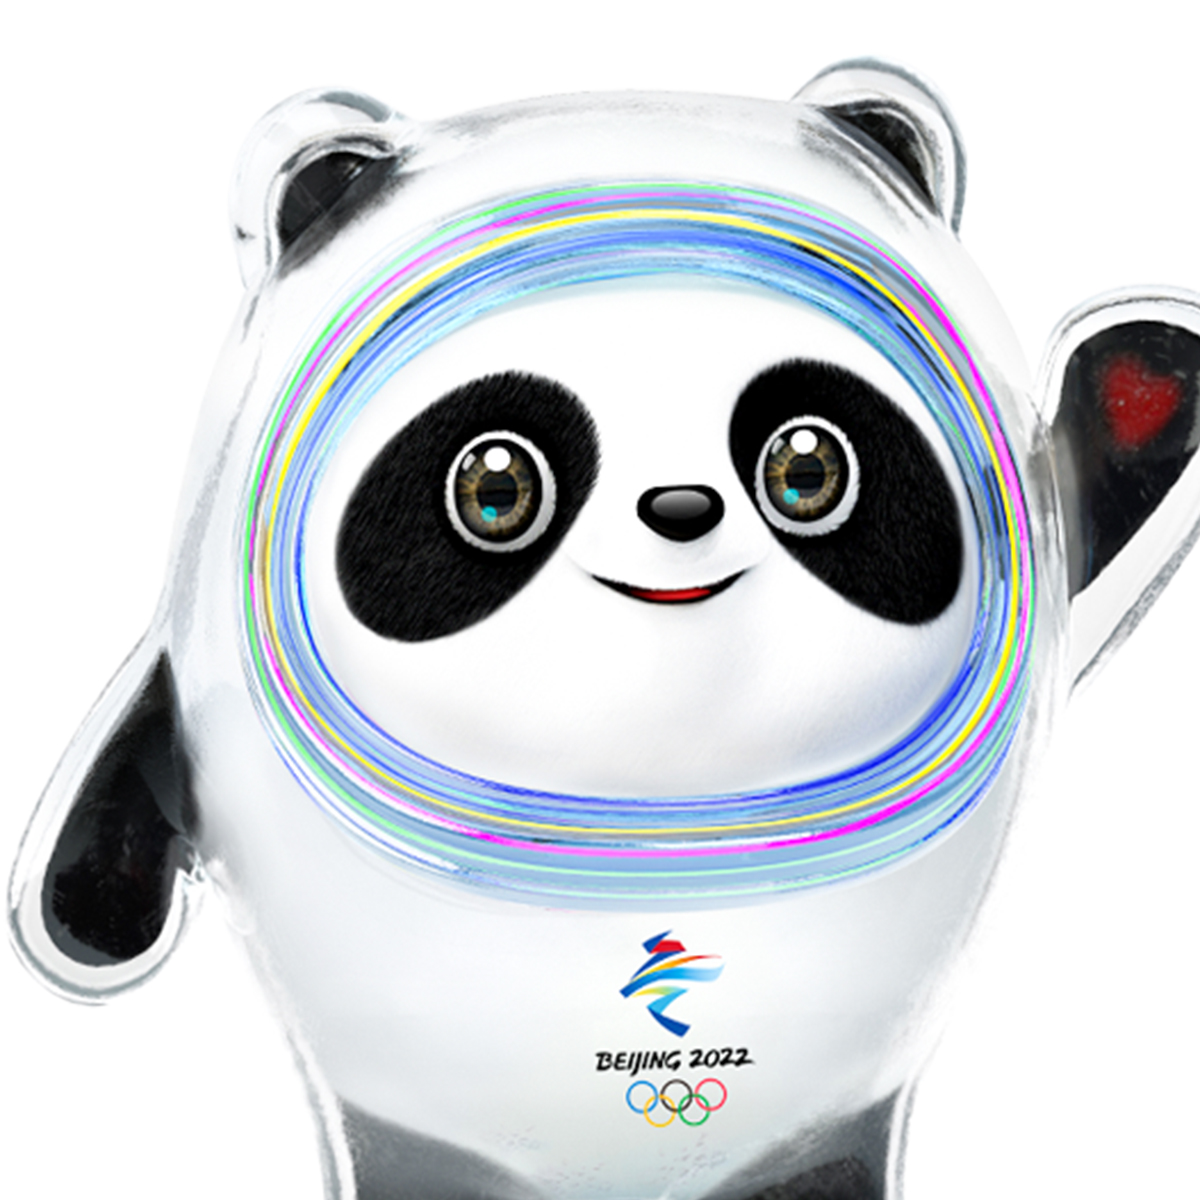 北京冬季五輪のマスコットはまたパンダ ネット上で酷評相次ぐ 日刊サイゾー